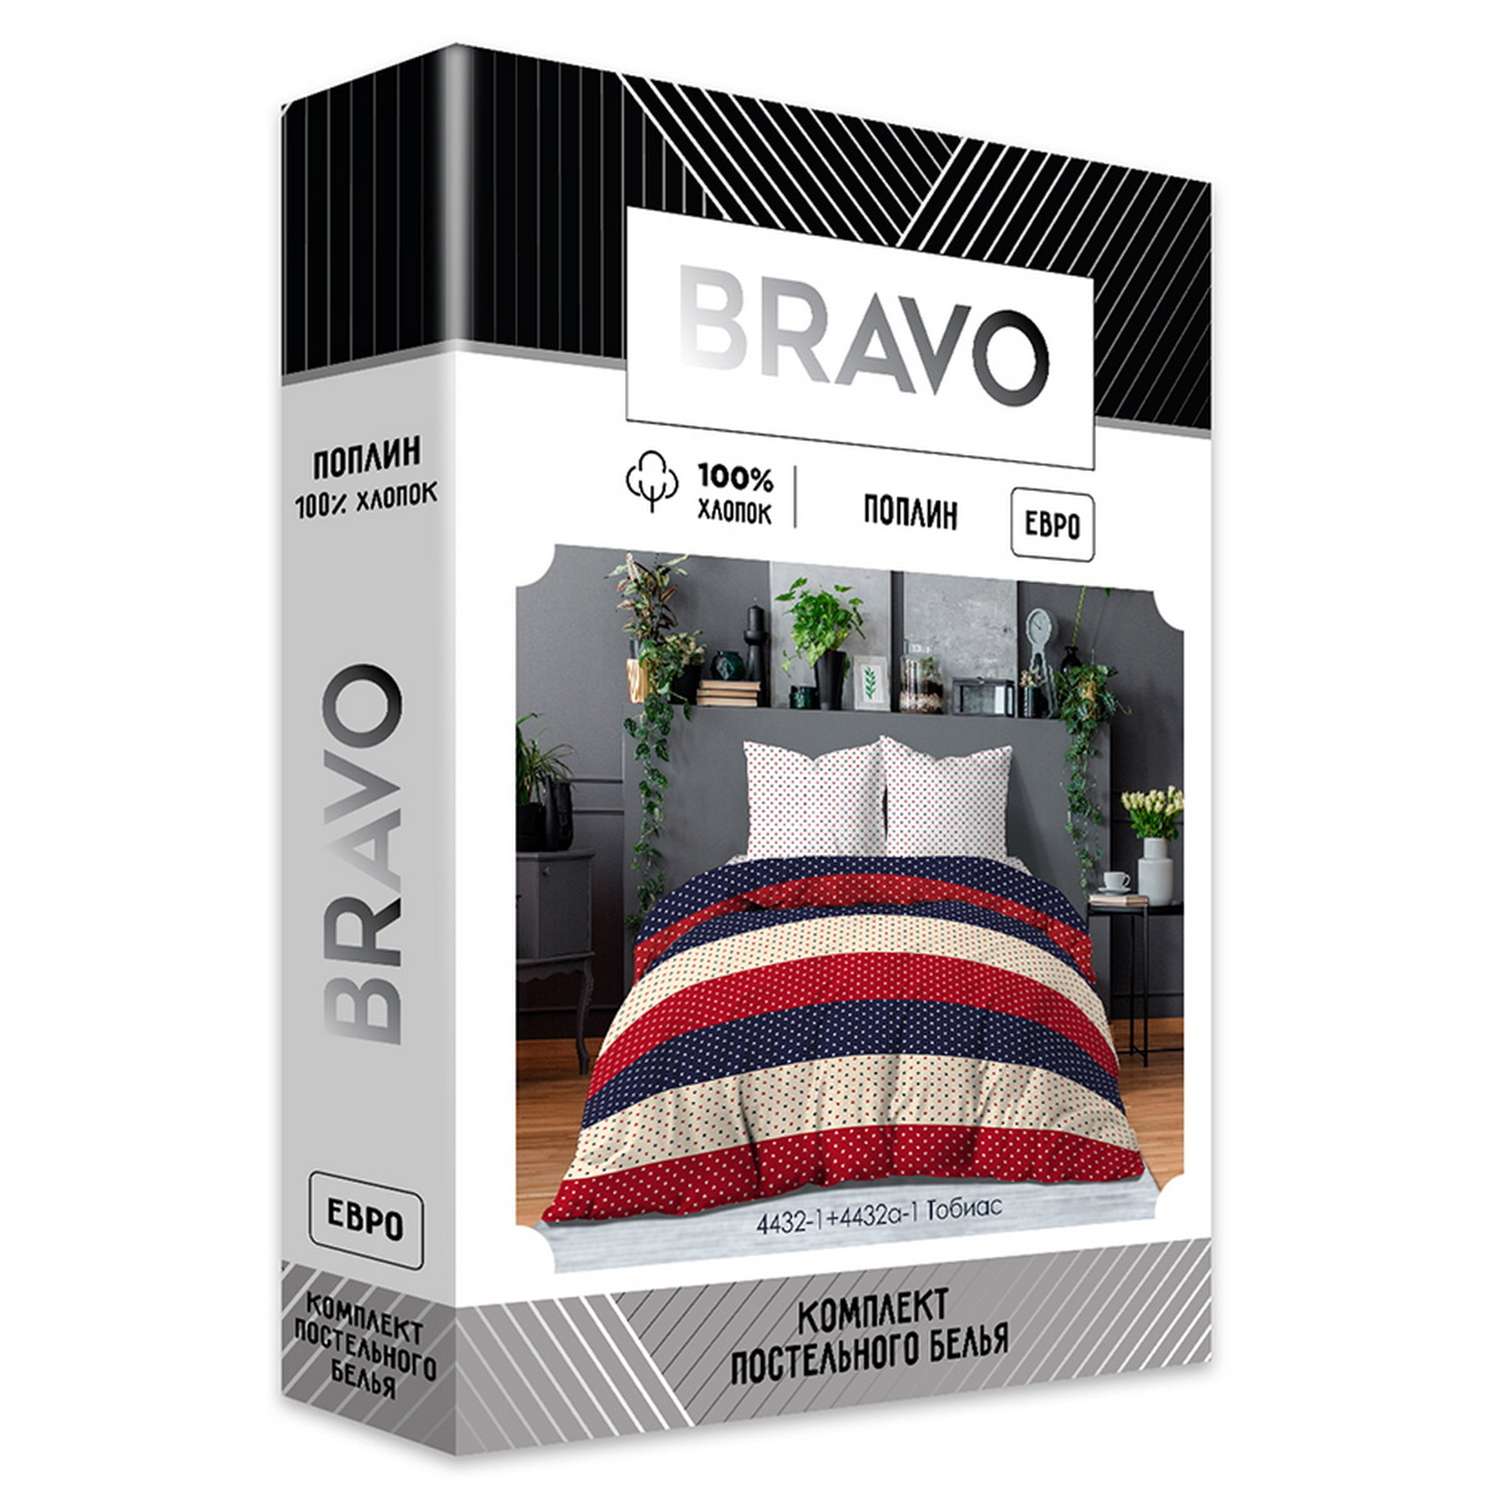 Комплект постельного белья Bravo Тобиас евро наволочки 70х70 м 261 рис 4432-1+4432а-1 - фото 10